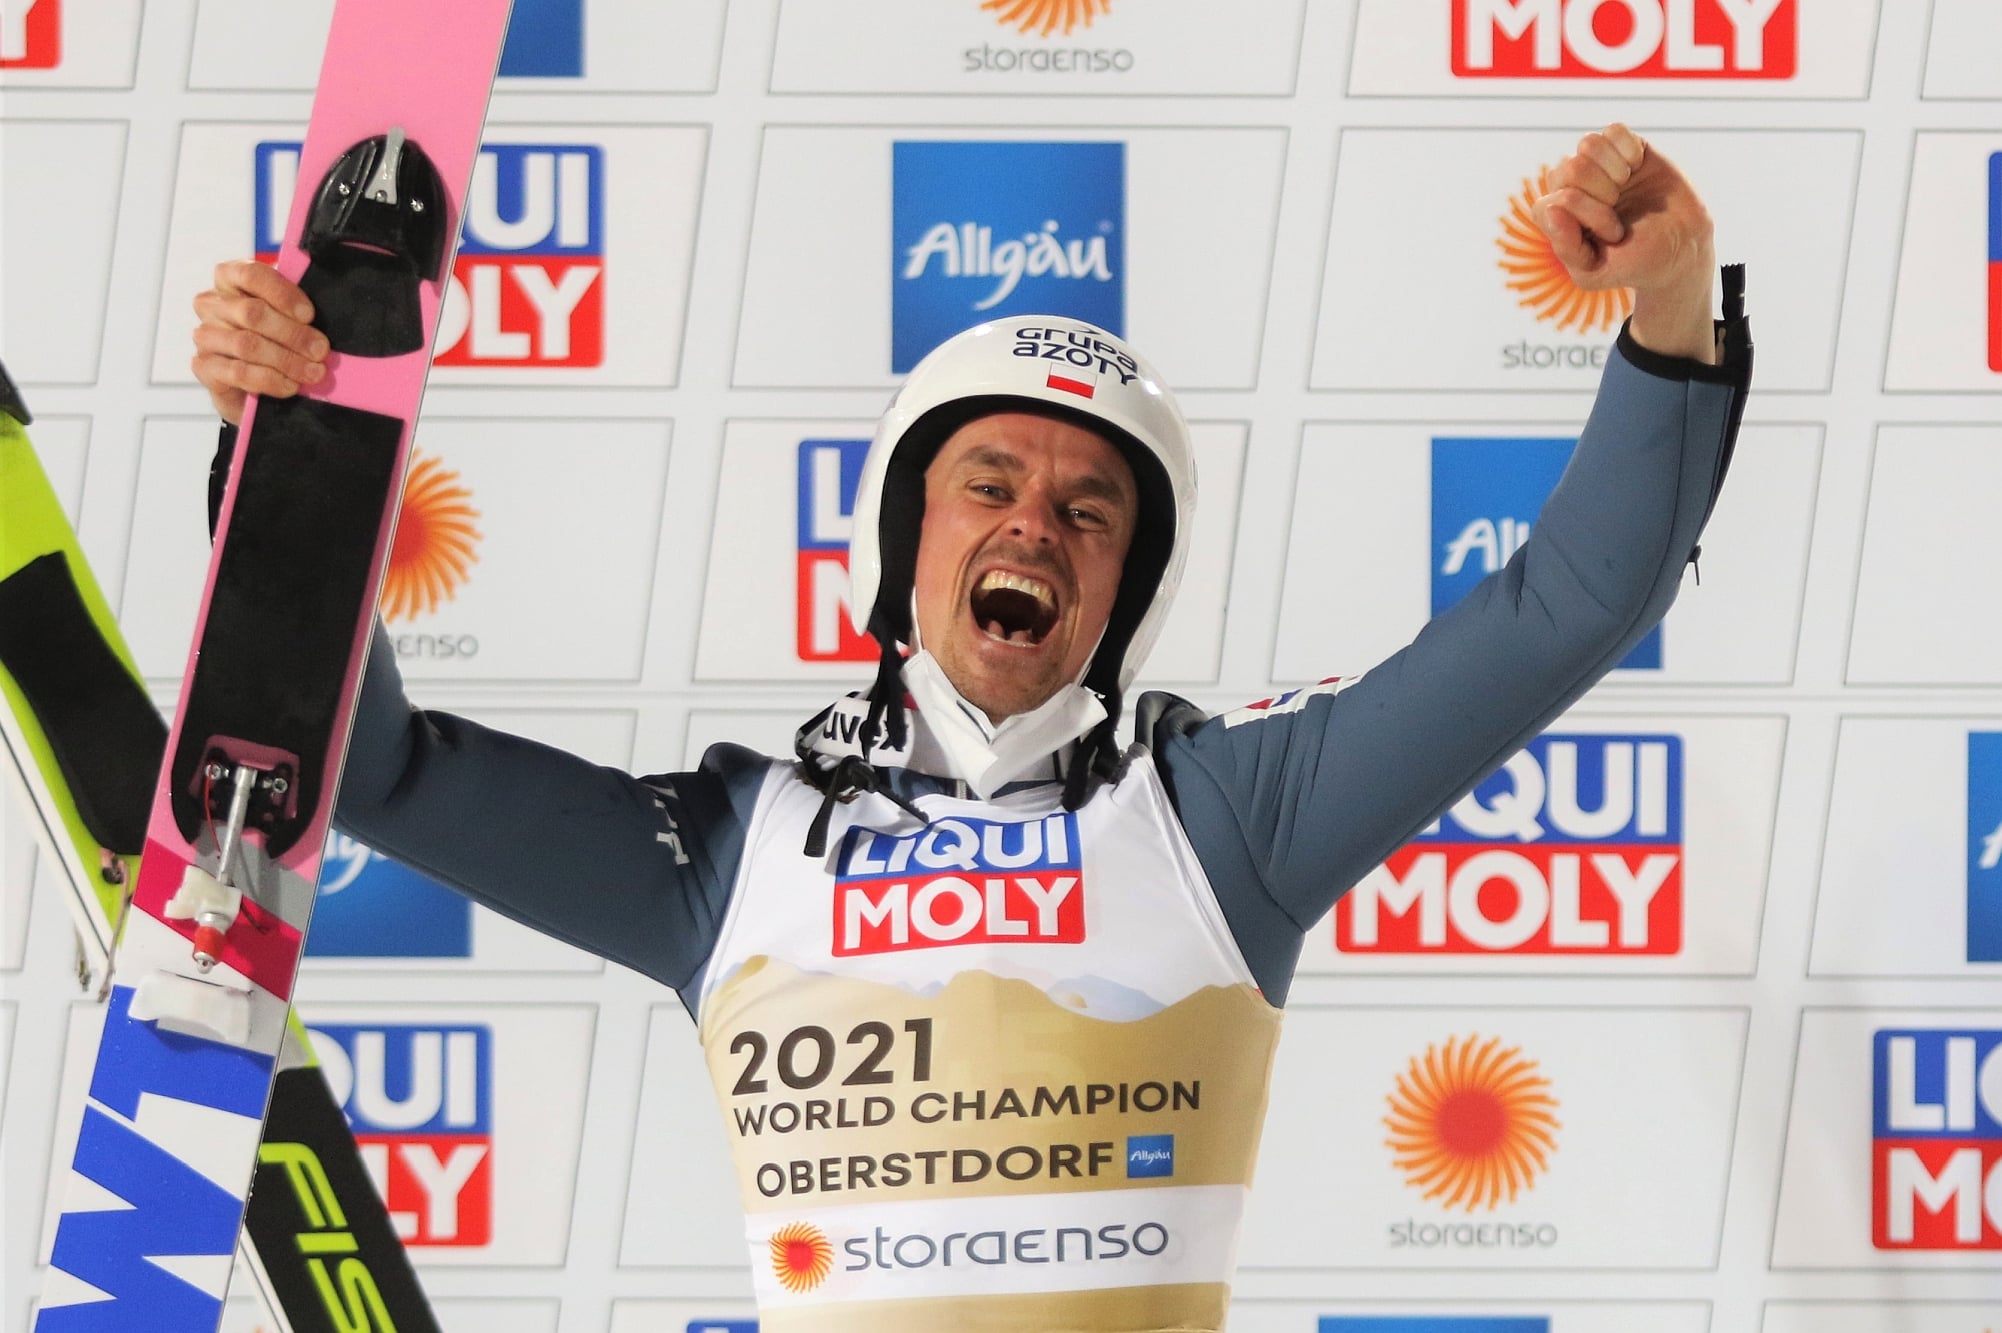 Spannung pur in Oberstdorf: Piotr Zyla holt Gold von der Normalschanze